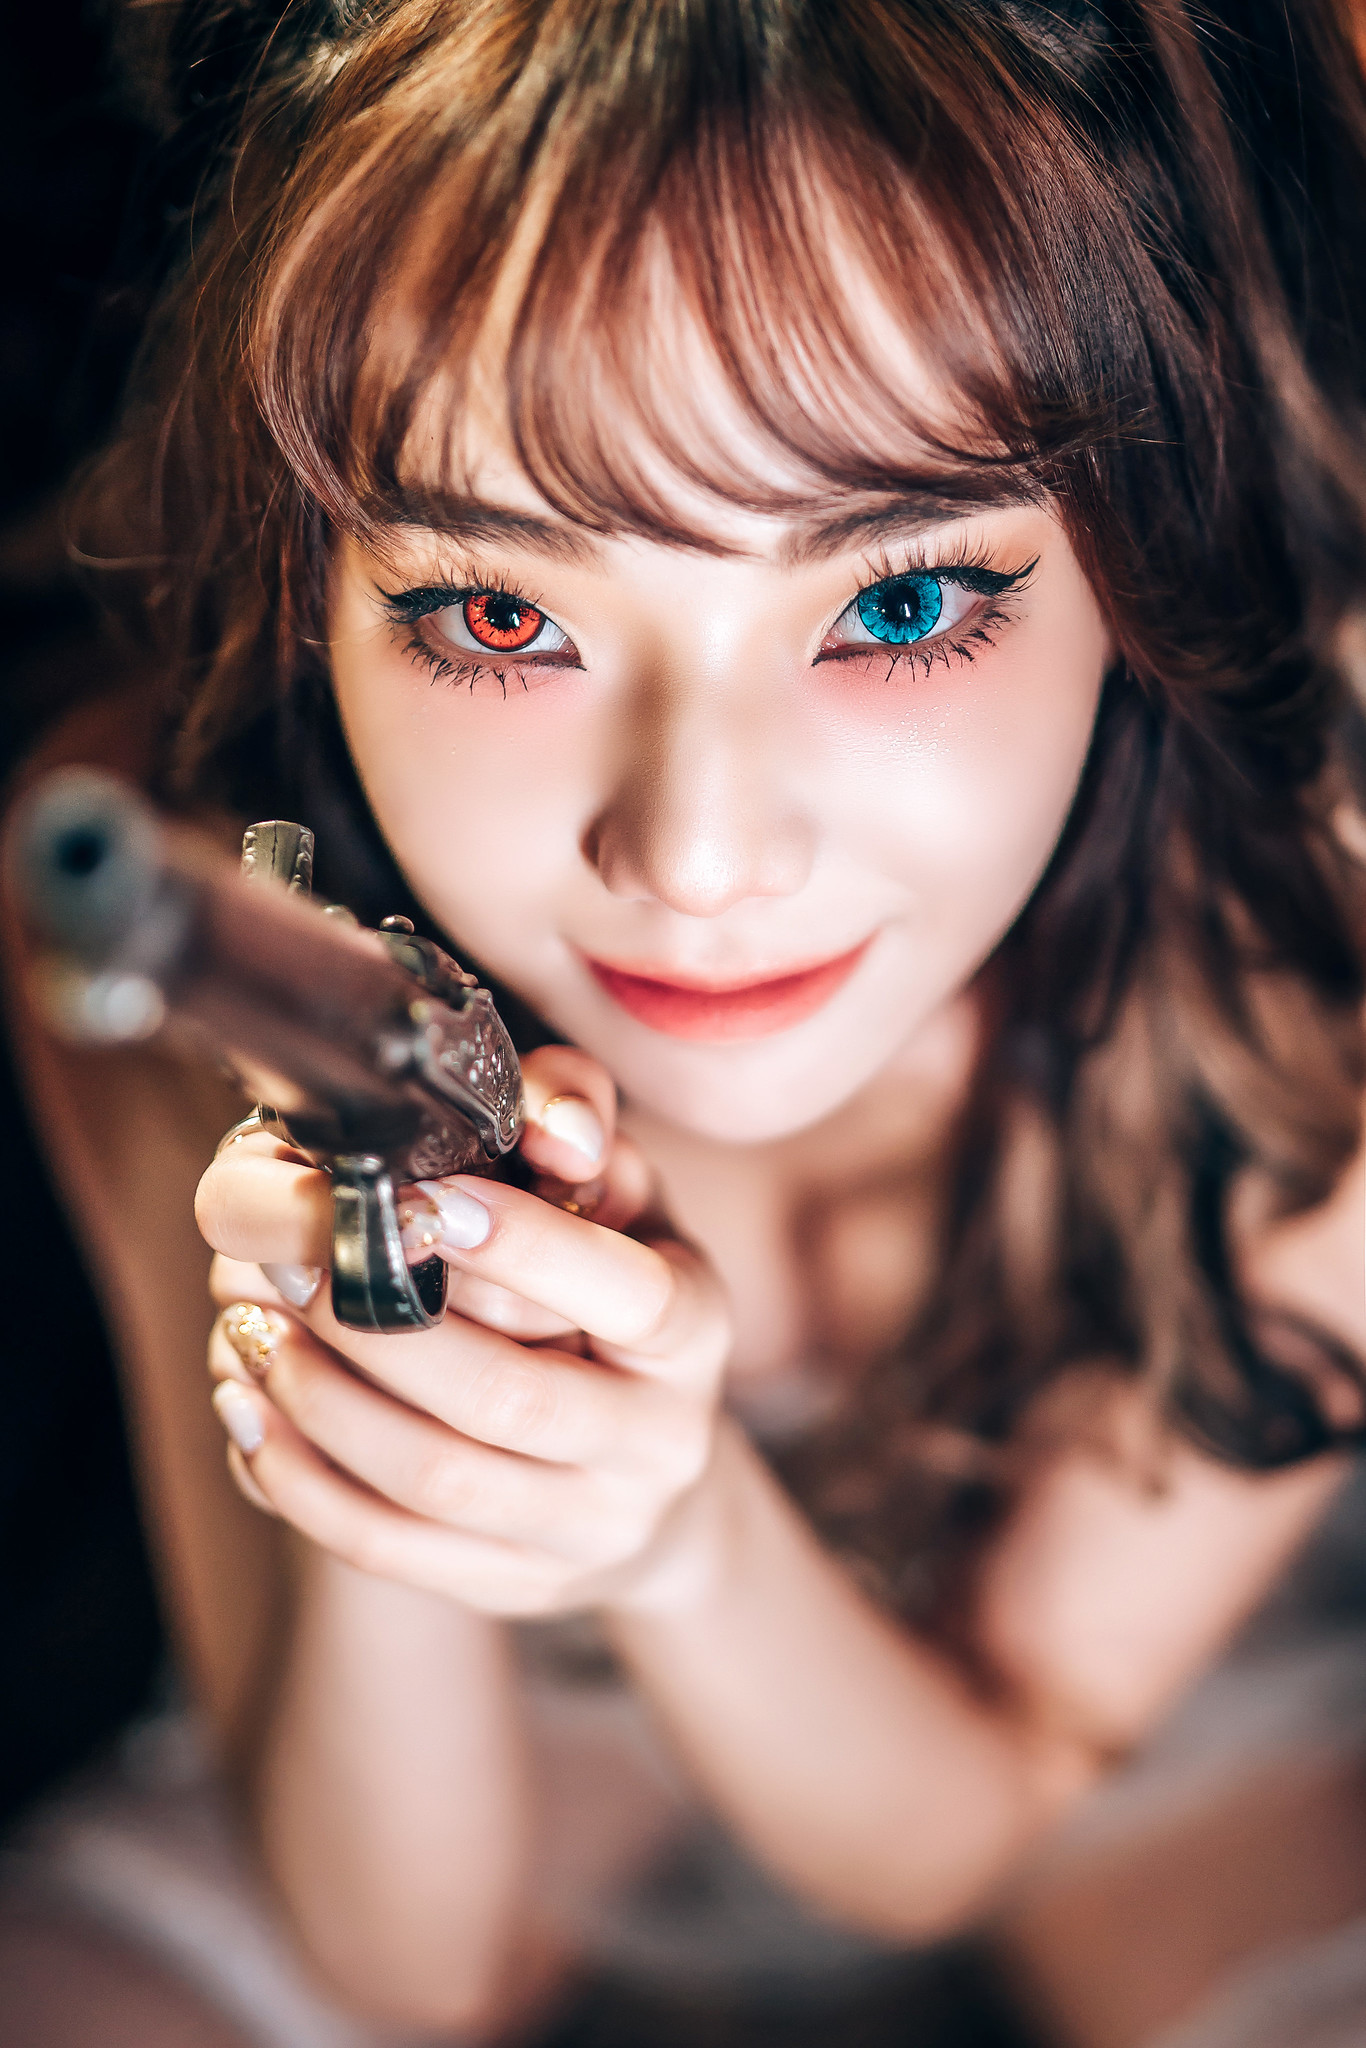 Model Women Asian Gun Aiming Weapon Girls With Guns Heterochromia Contact Lenses Face Closeup Sexy F 1366x2048